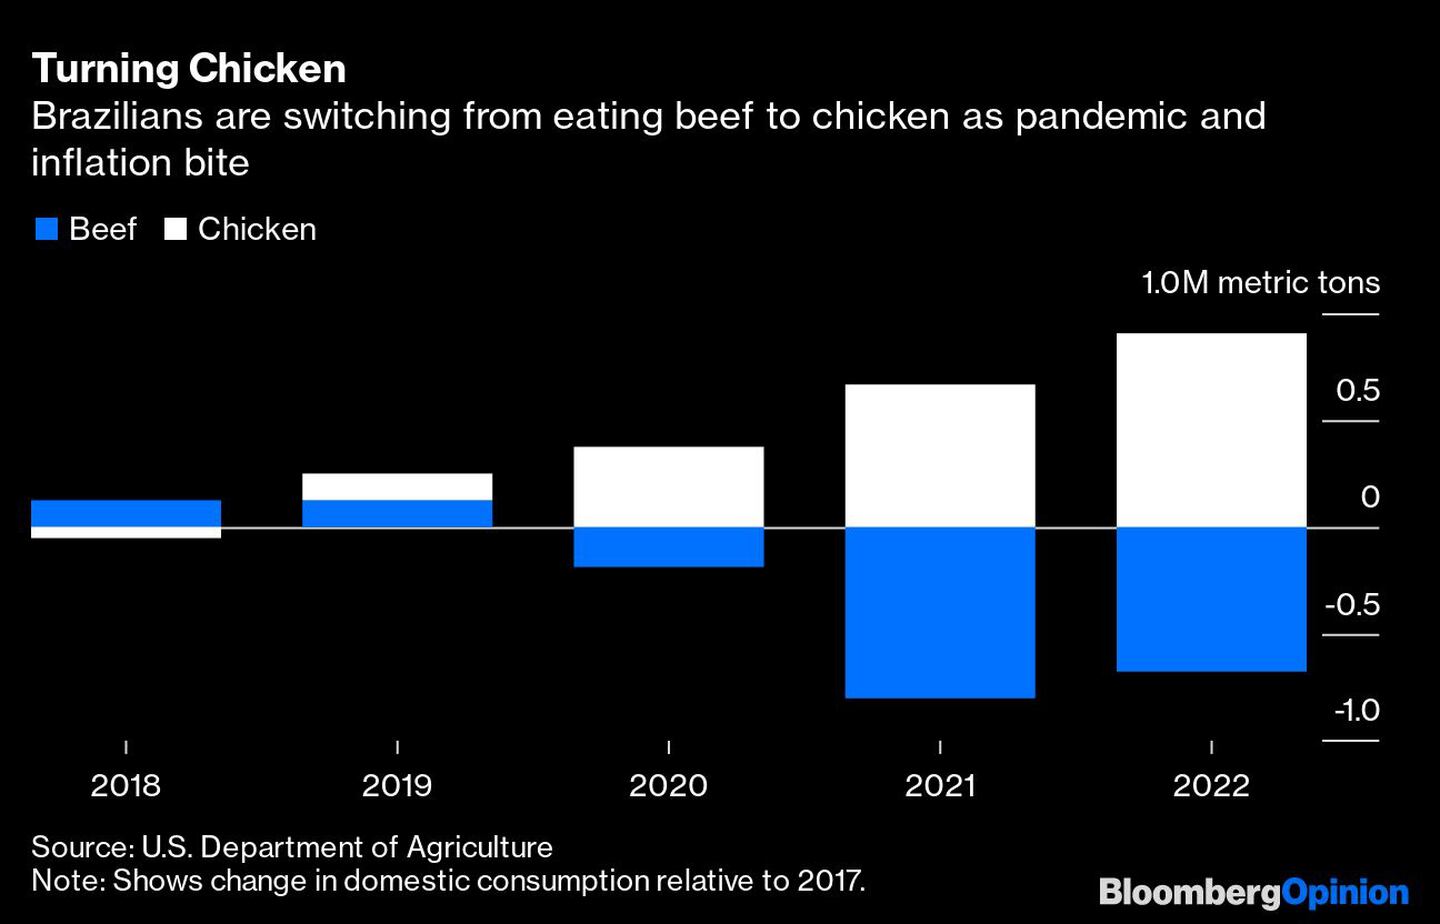 Los brasileños están pasando de comer carne de vacuno a pollo a medida que la inflación pandémica erosiona su poder adquisitivodfd